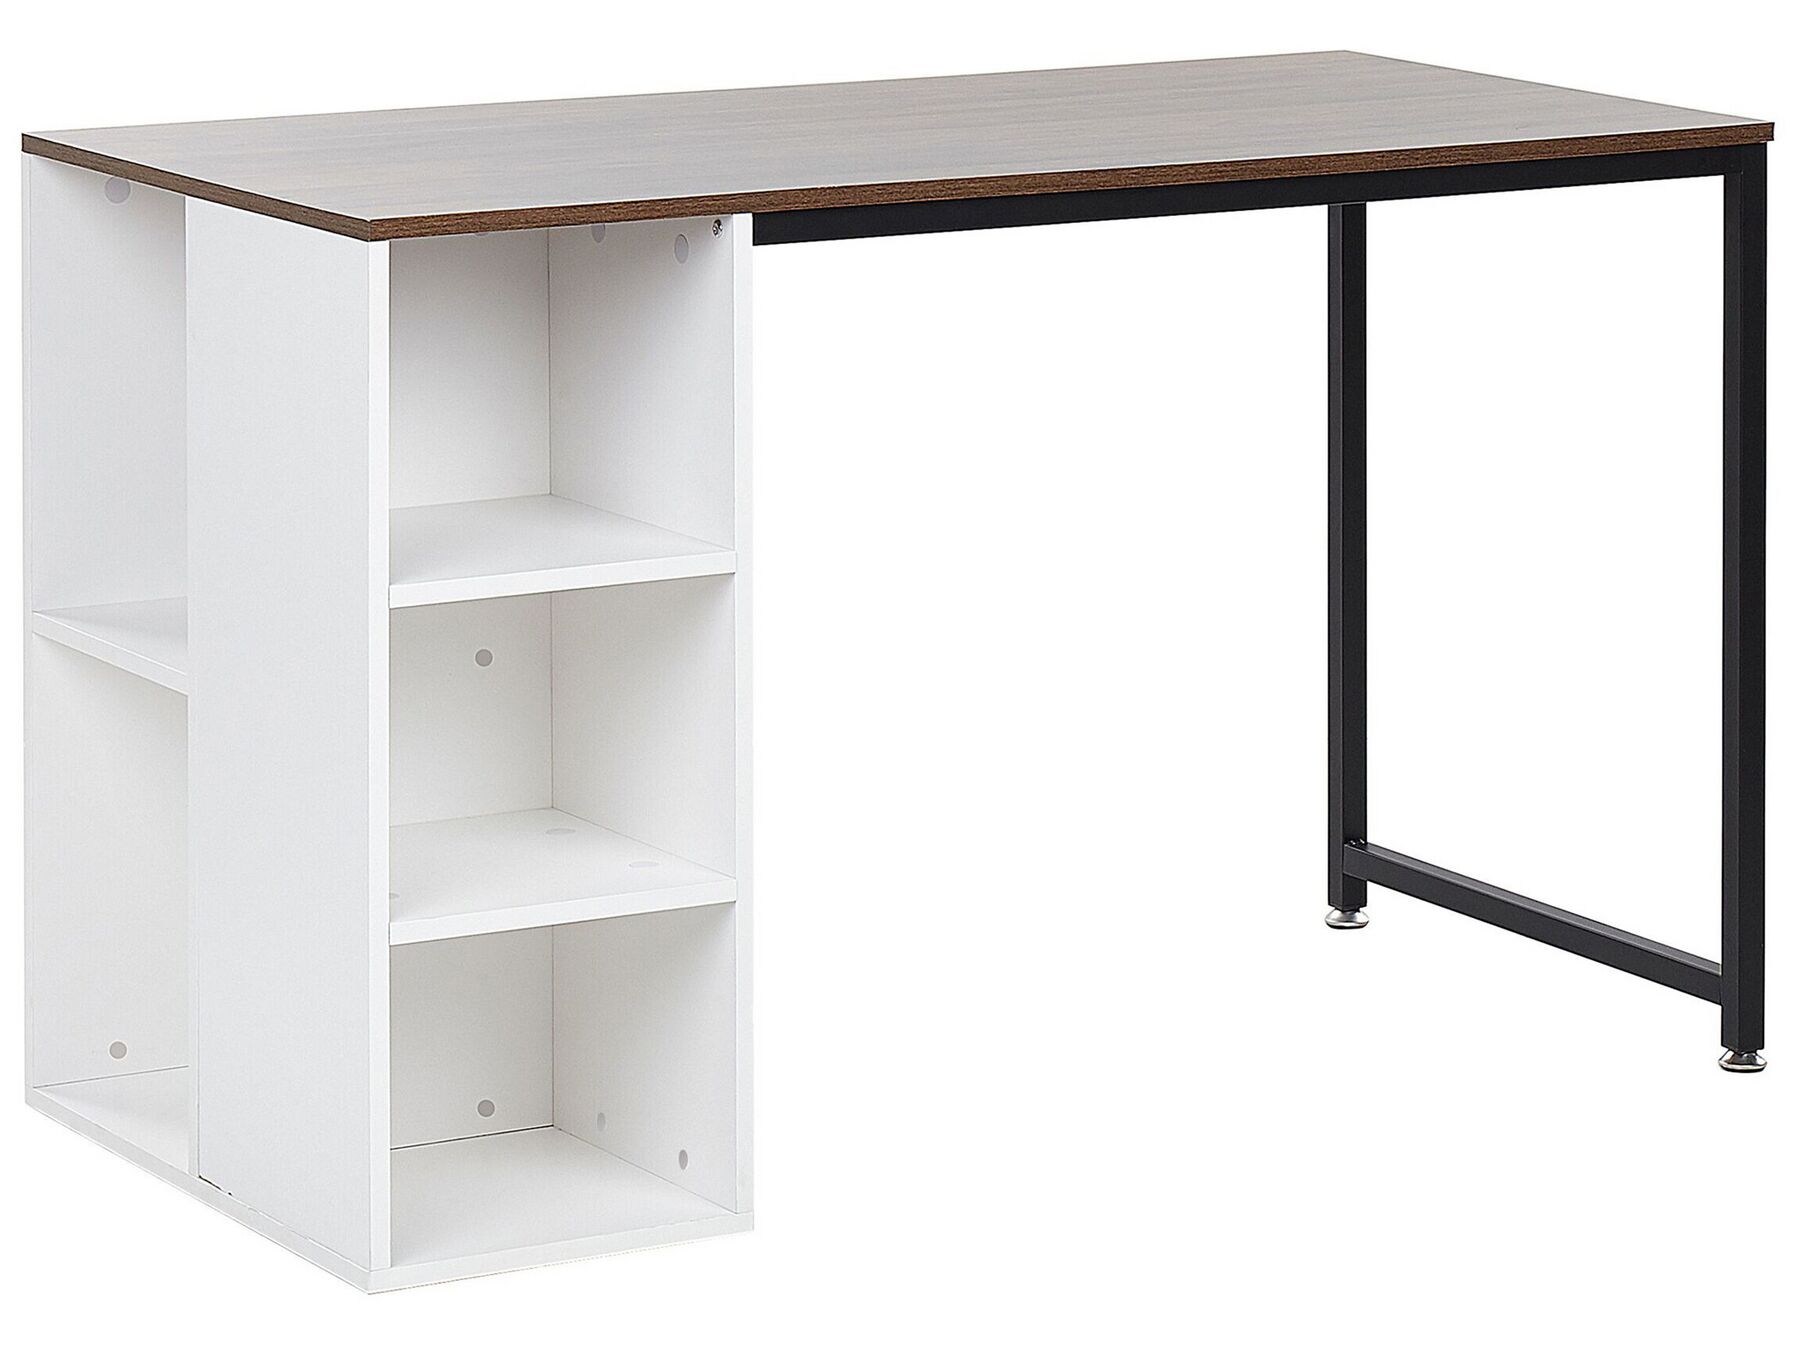 Schreibtisch weiss / dunkler Holzfarbton 120 x 60 cm DESE_791162